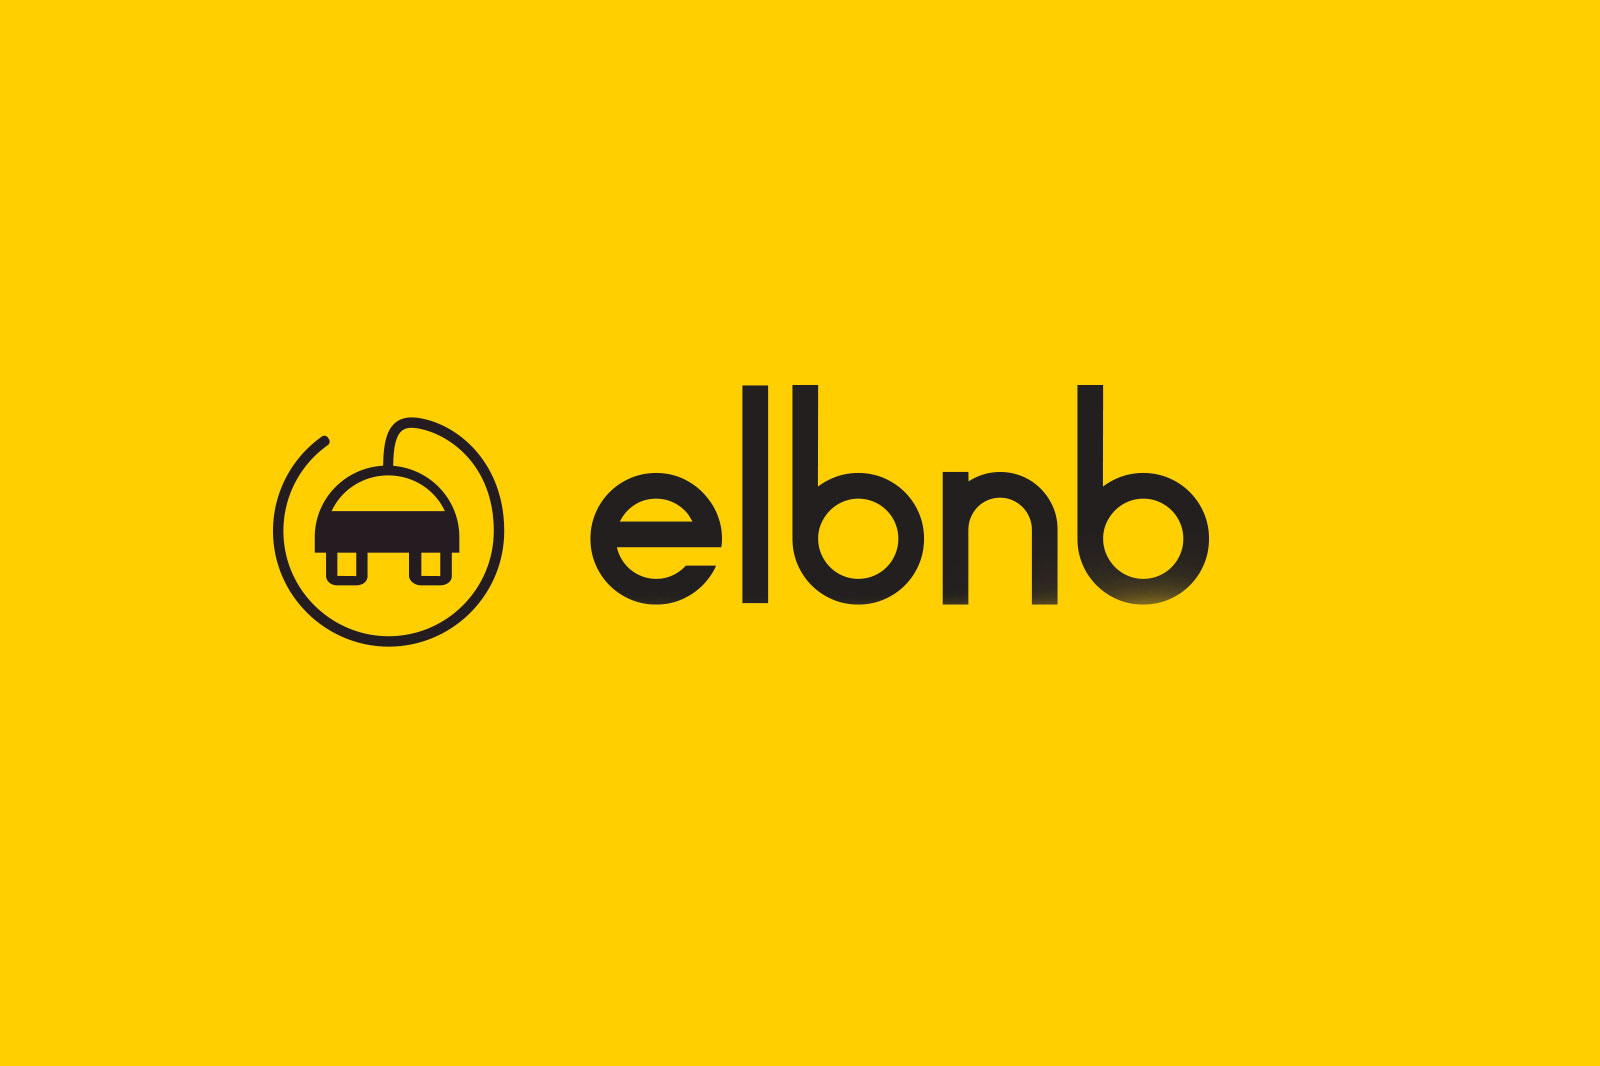 Elbnb - ge någon möjlighet att ladda sin elbil hemma hos dig!